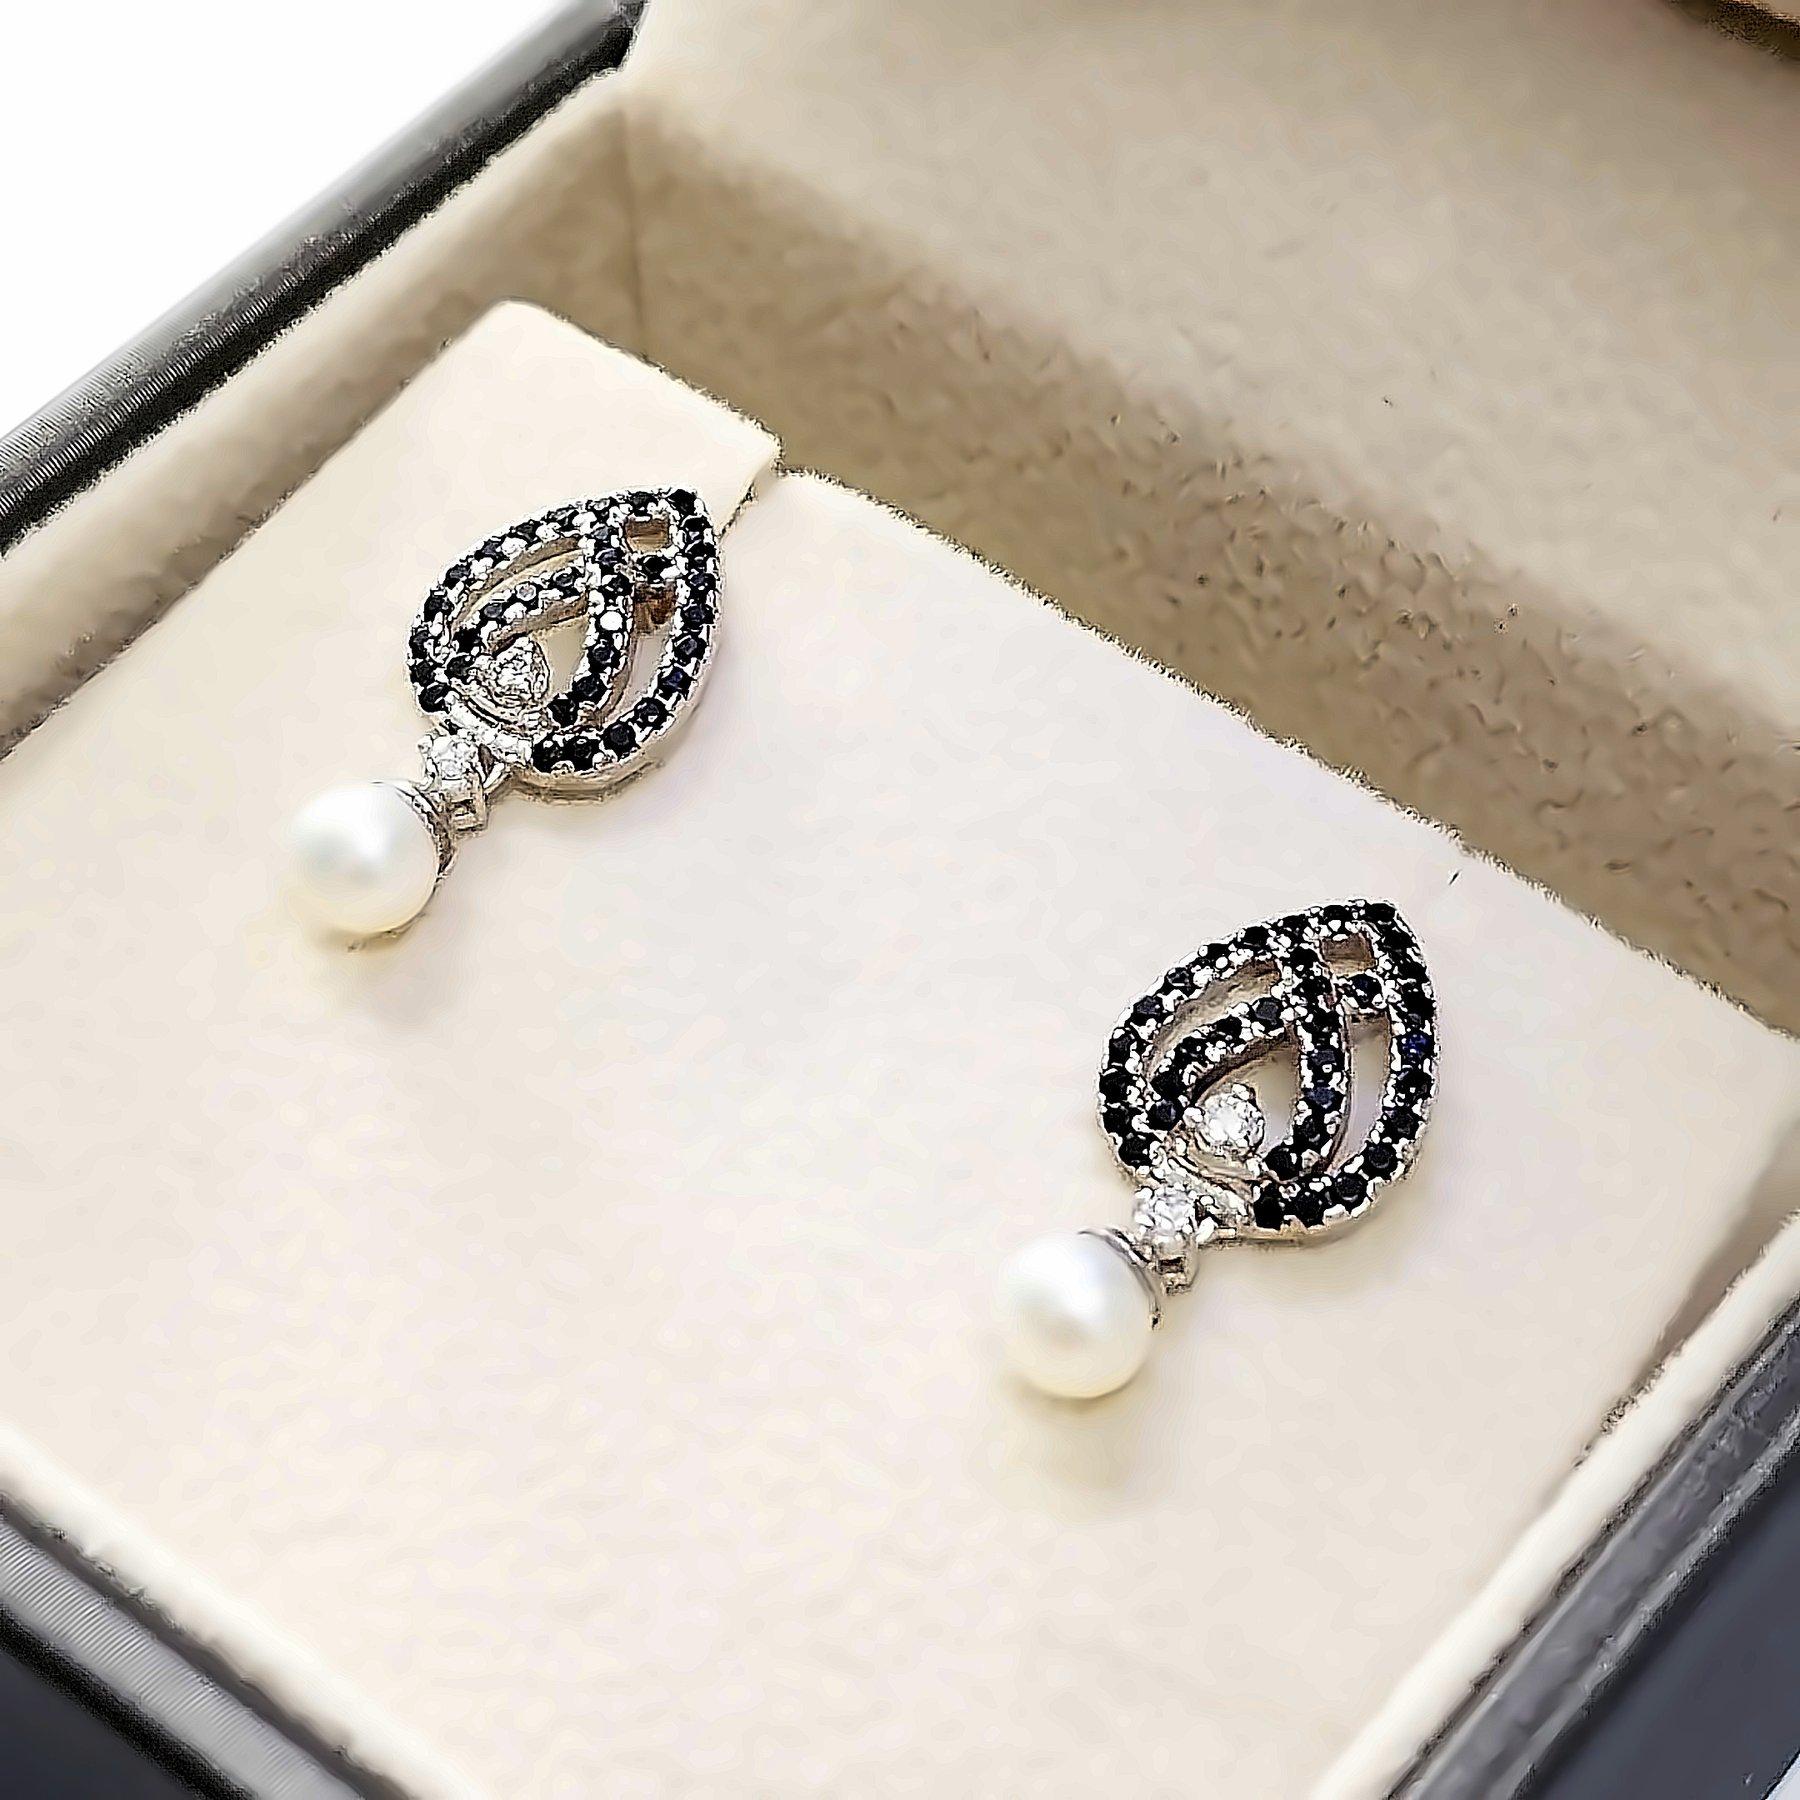 Die Ohrringe sind aus 14K Weißgold und jeder Ohrring ist mit einer runden Perle, 2 natürlichen Diamanten und 34 natürlichen Spinellen besetzt.
Insgesamt 2 Perlen, 4 Diamanten mit einem Gesamtgewicht von 0,15 ct,  und 68 Spinelle mit einem